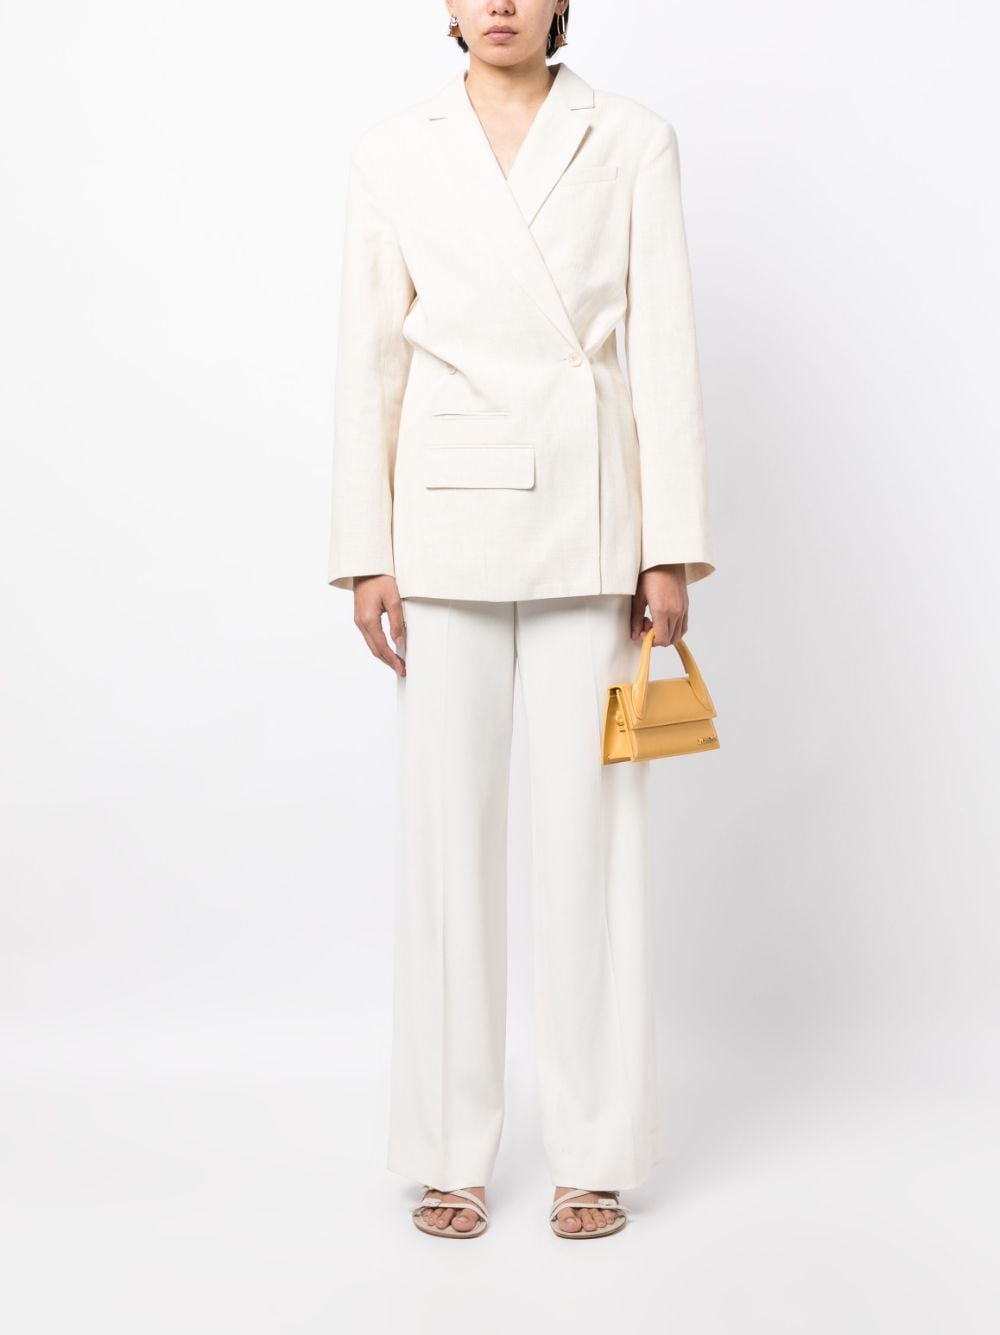 无品牌词语 设计新颖 白色亚麻混纺女式不对称双排扣西装外套